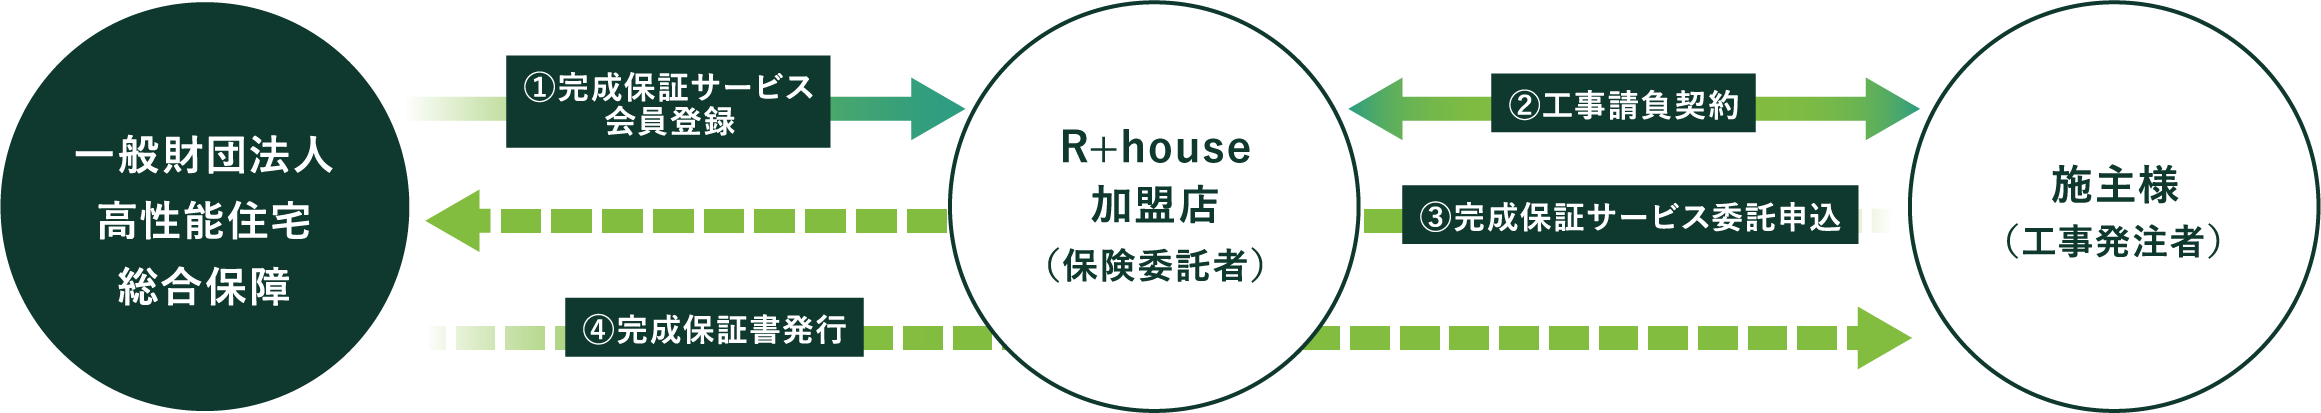 R+house の完成保証サービス